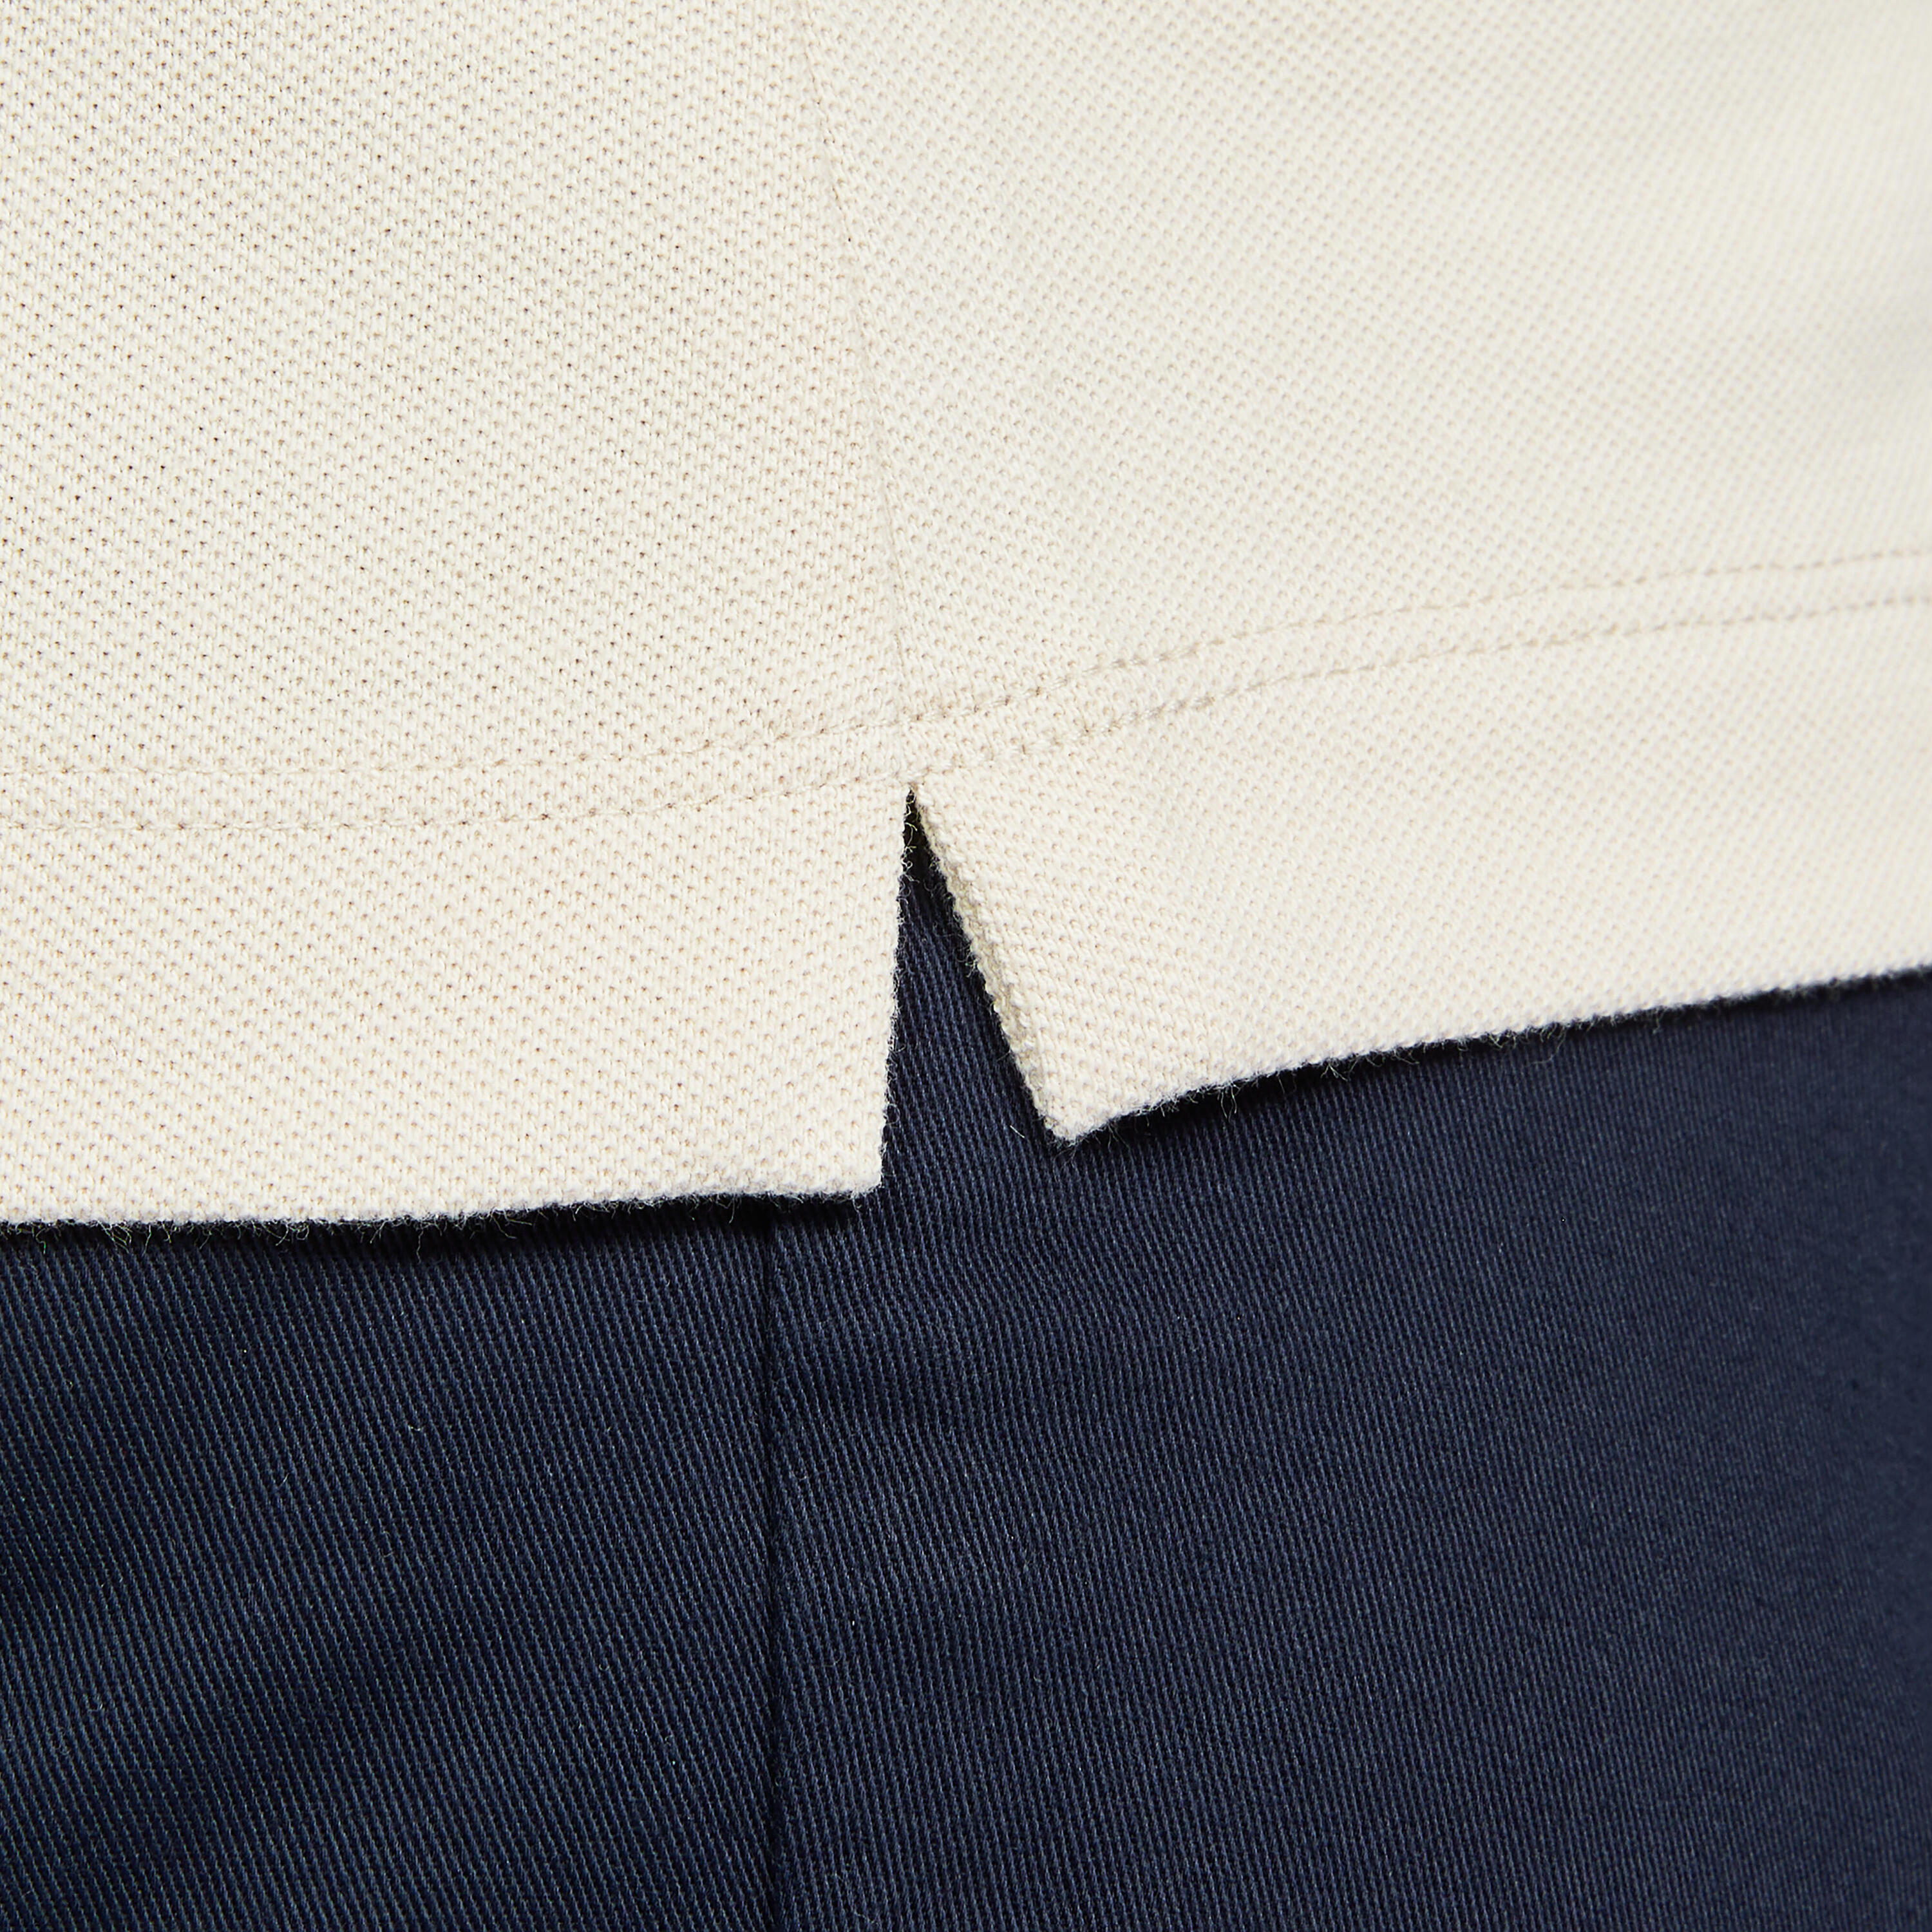 Women's short-sleeved golf polo shirt - MW500 light beige 6/6